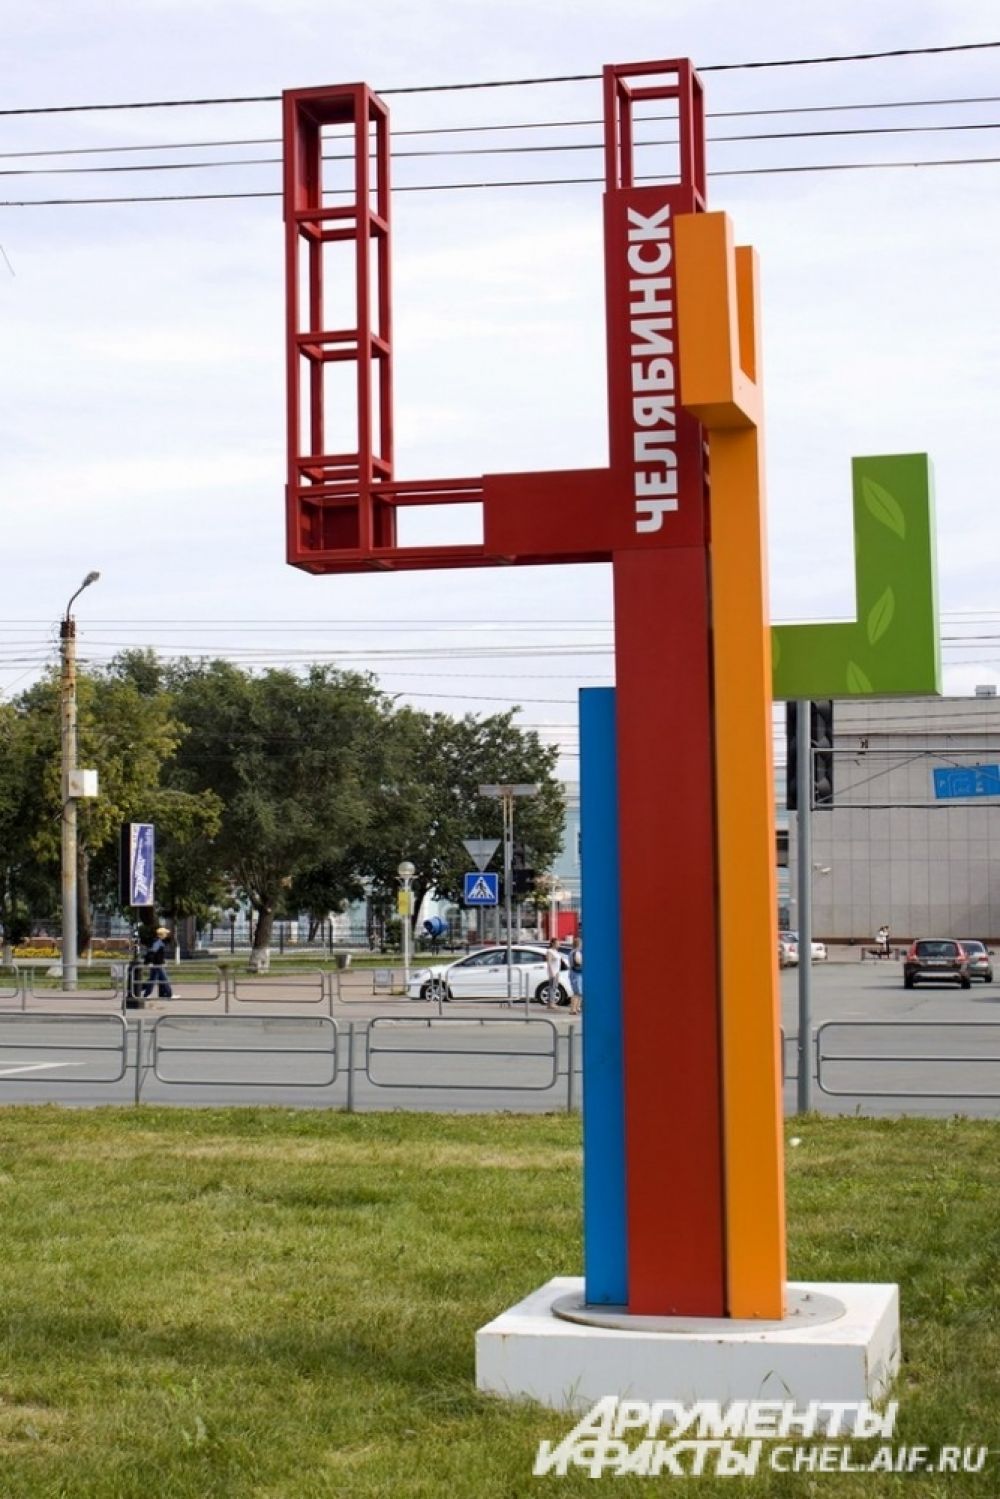 Совсем недавно были установлены три буквы «Ч», самая большая  на кольце по дороге в Аэропорт, её высота 9 метров. Композиция представляет собой четыре буквы «Ч», смотрящие по четырём сторонам света.